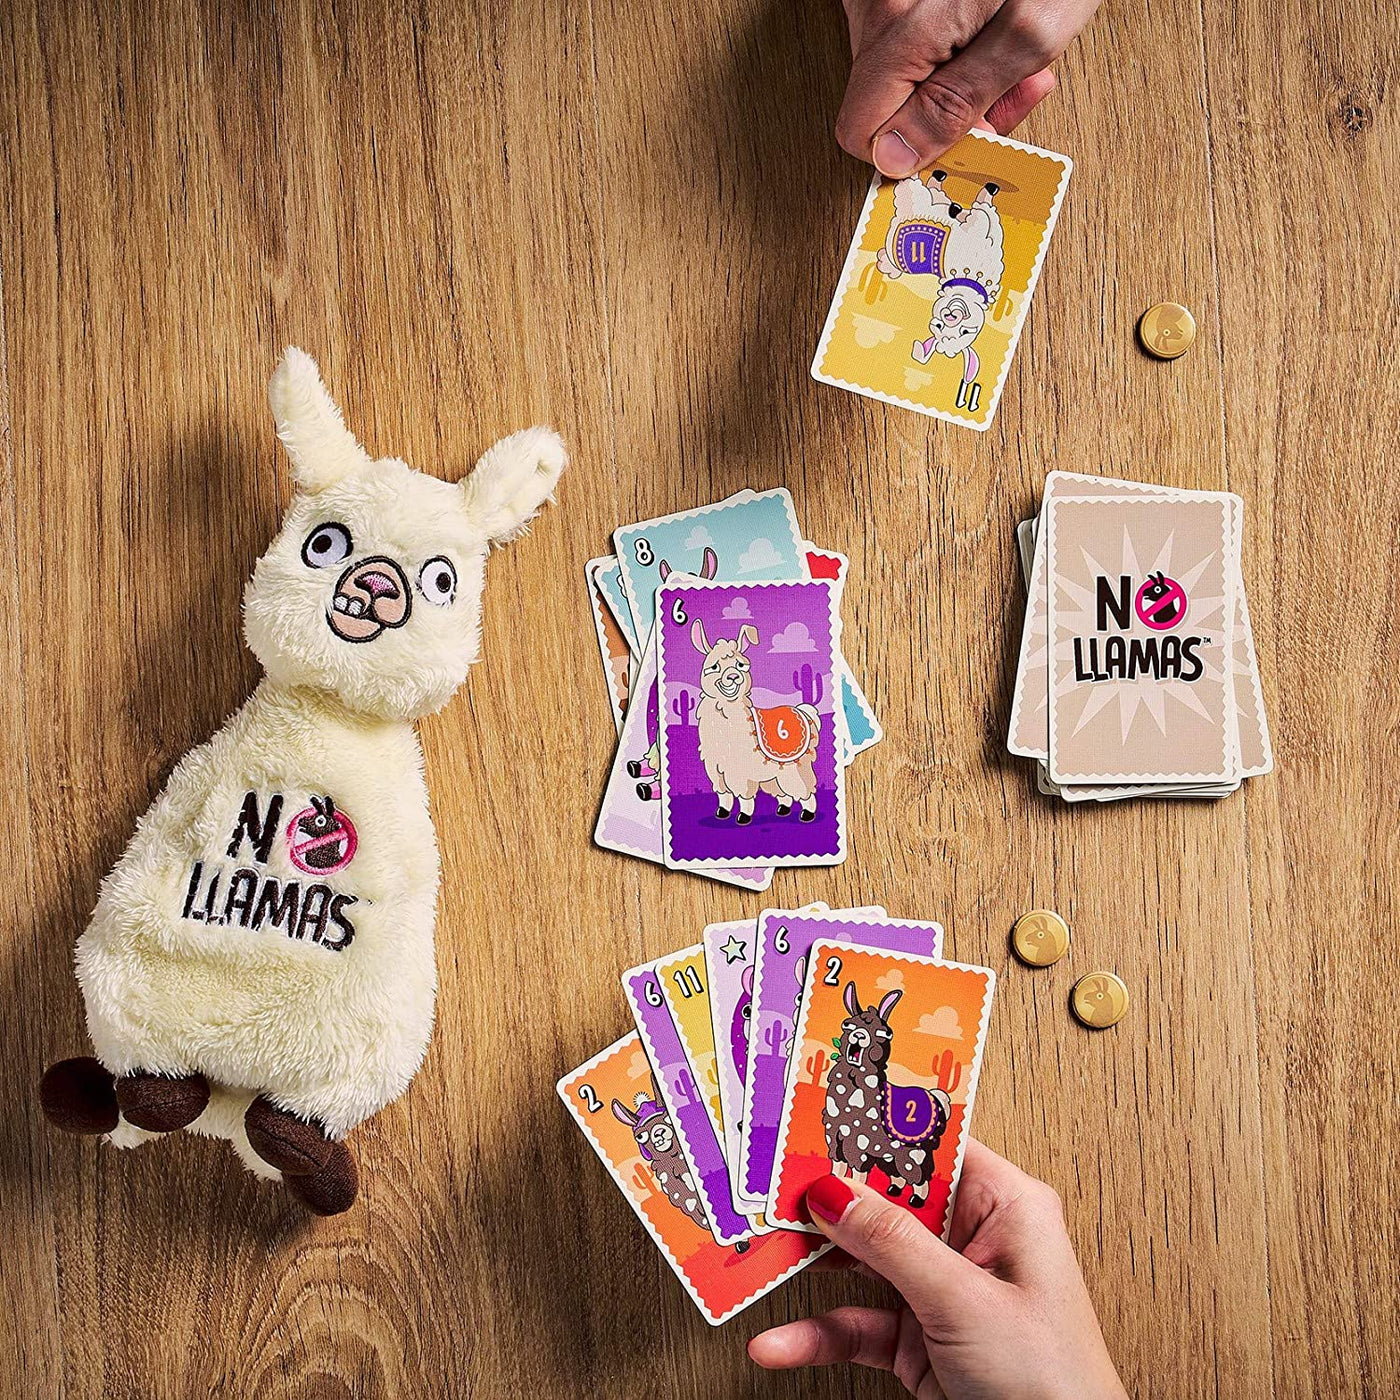 No Llamas Card Game